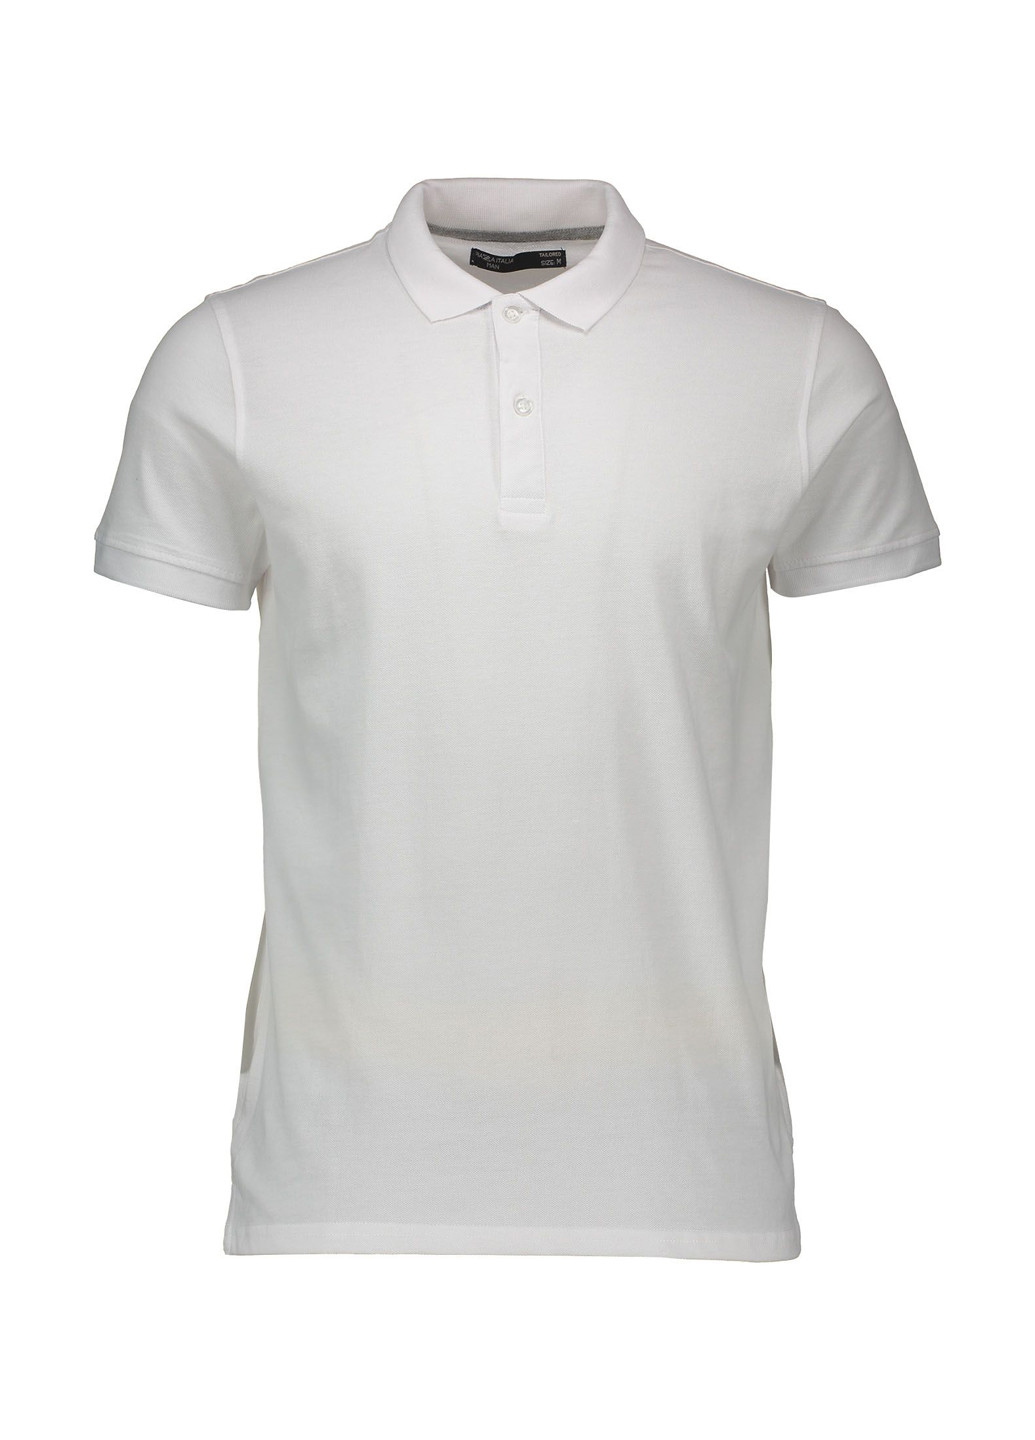 Белая футболка-поло для мужчин Piazza Italia однотонная